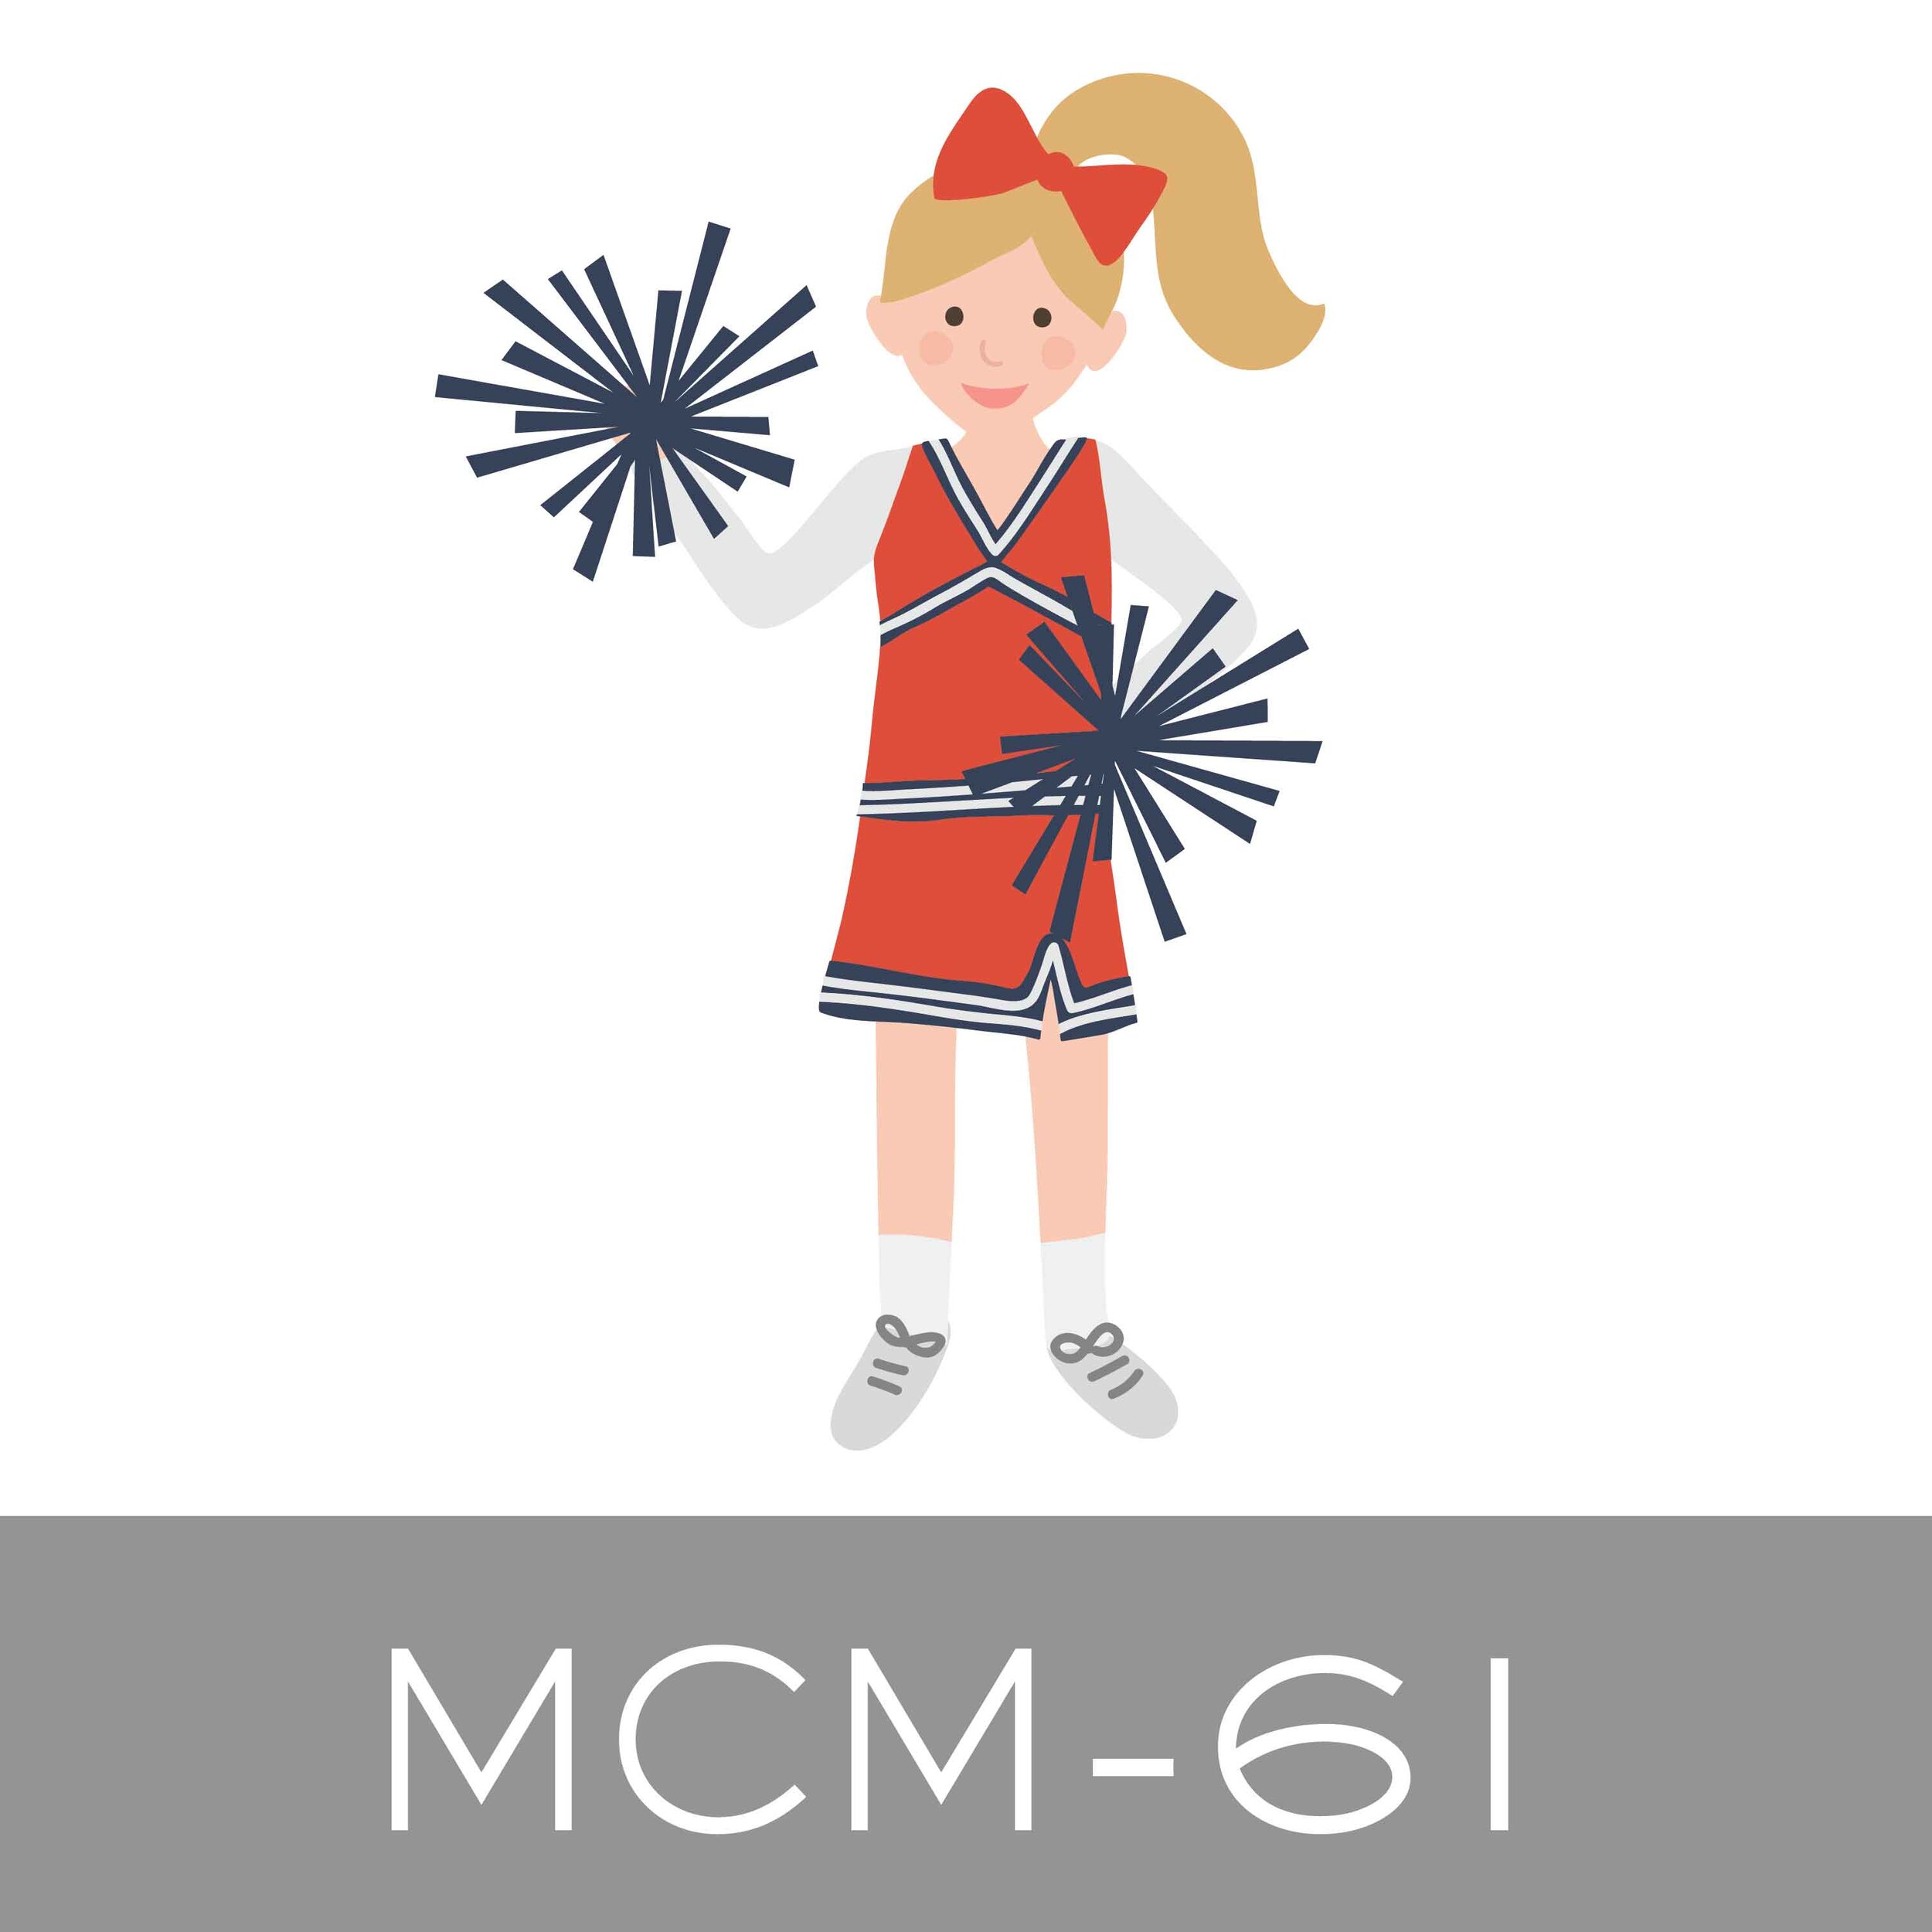 MCM-61.jpg